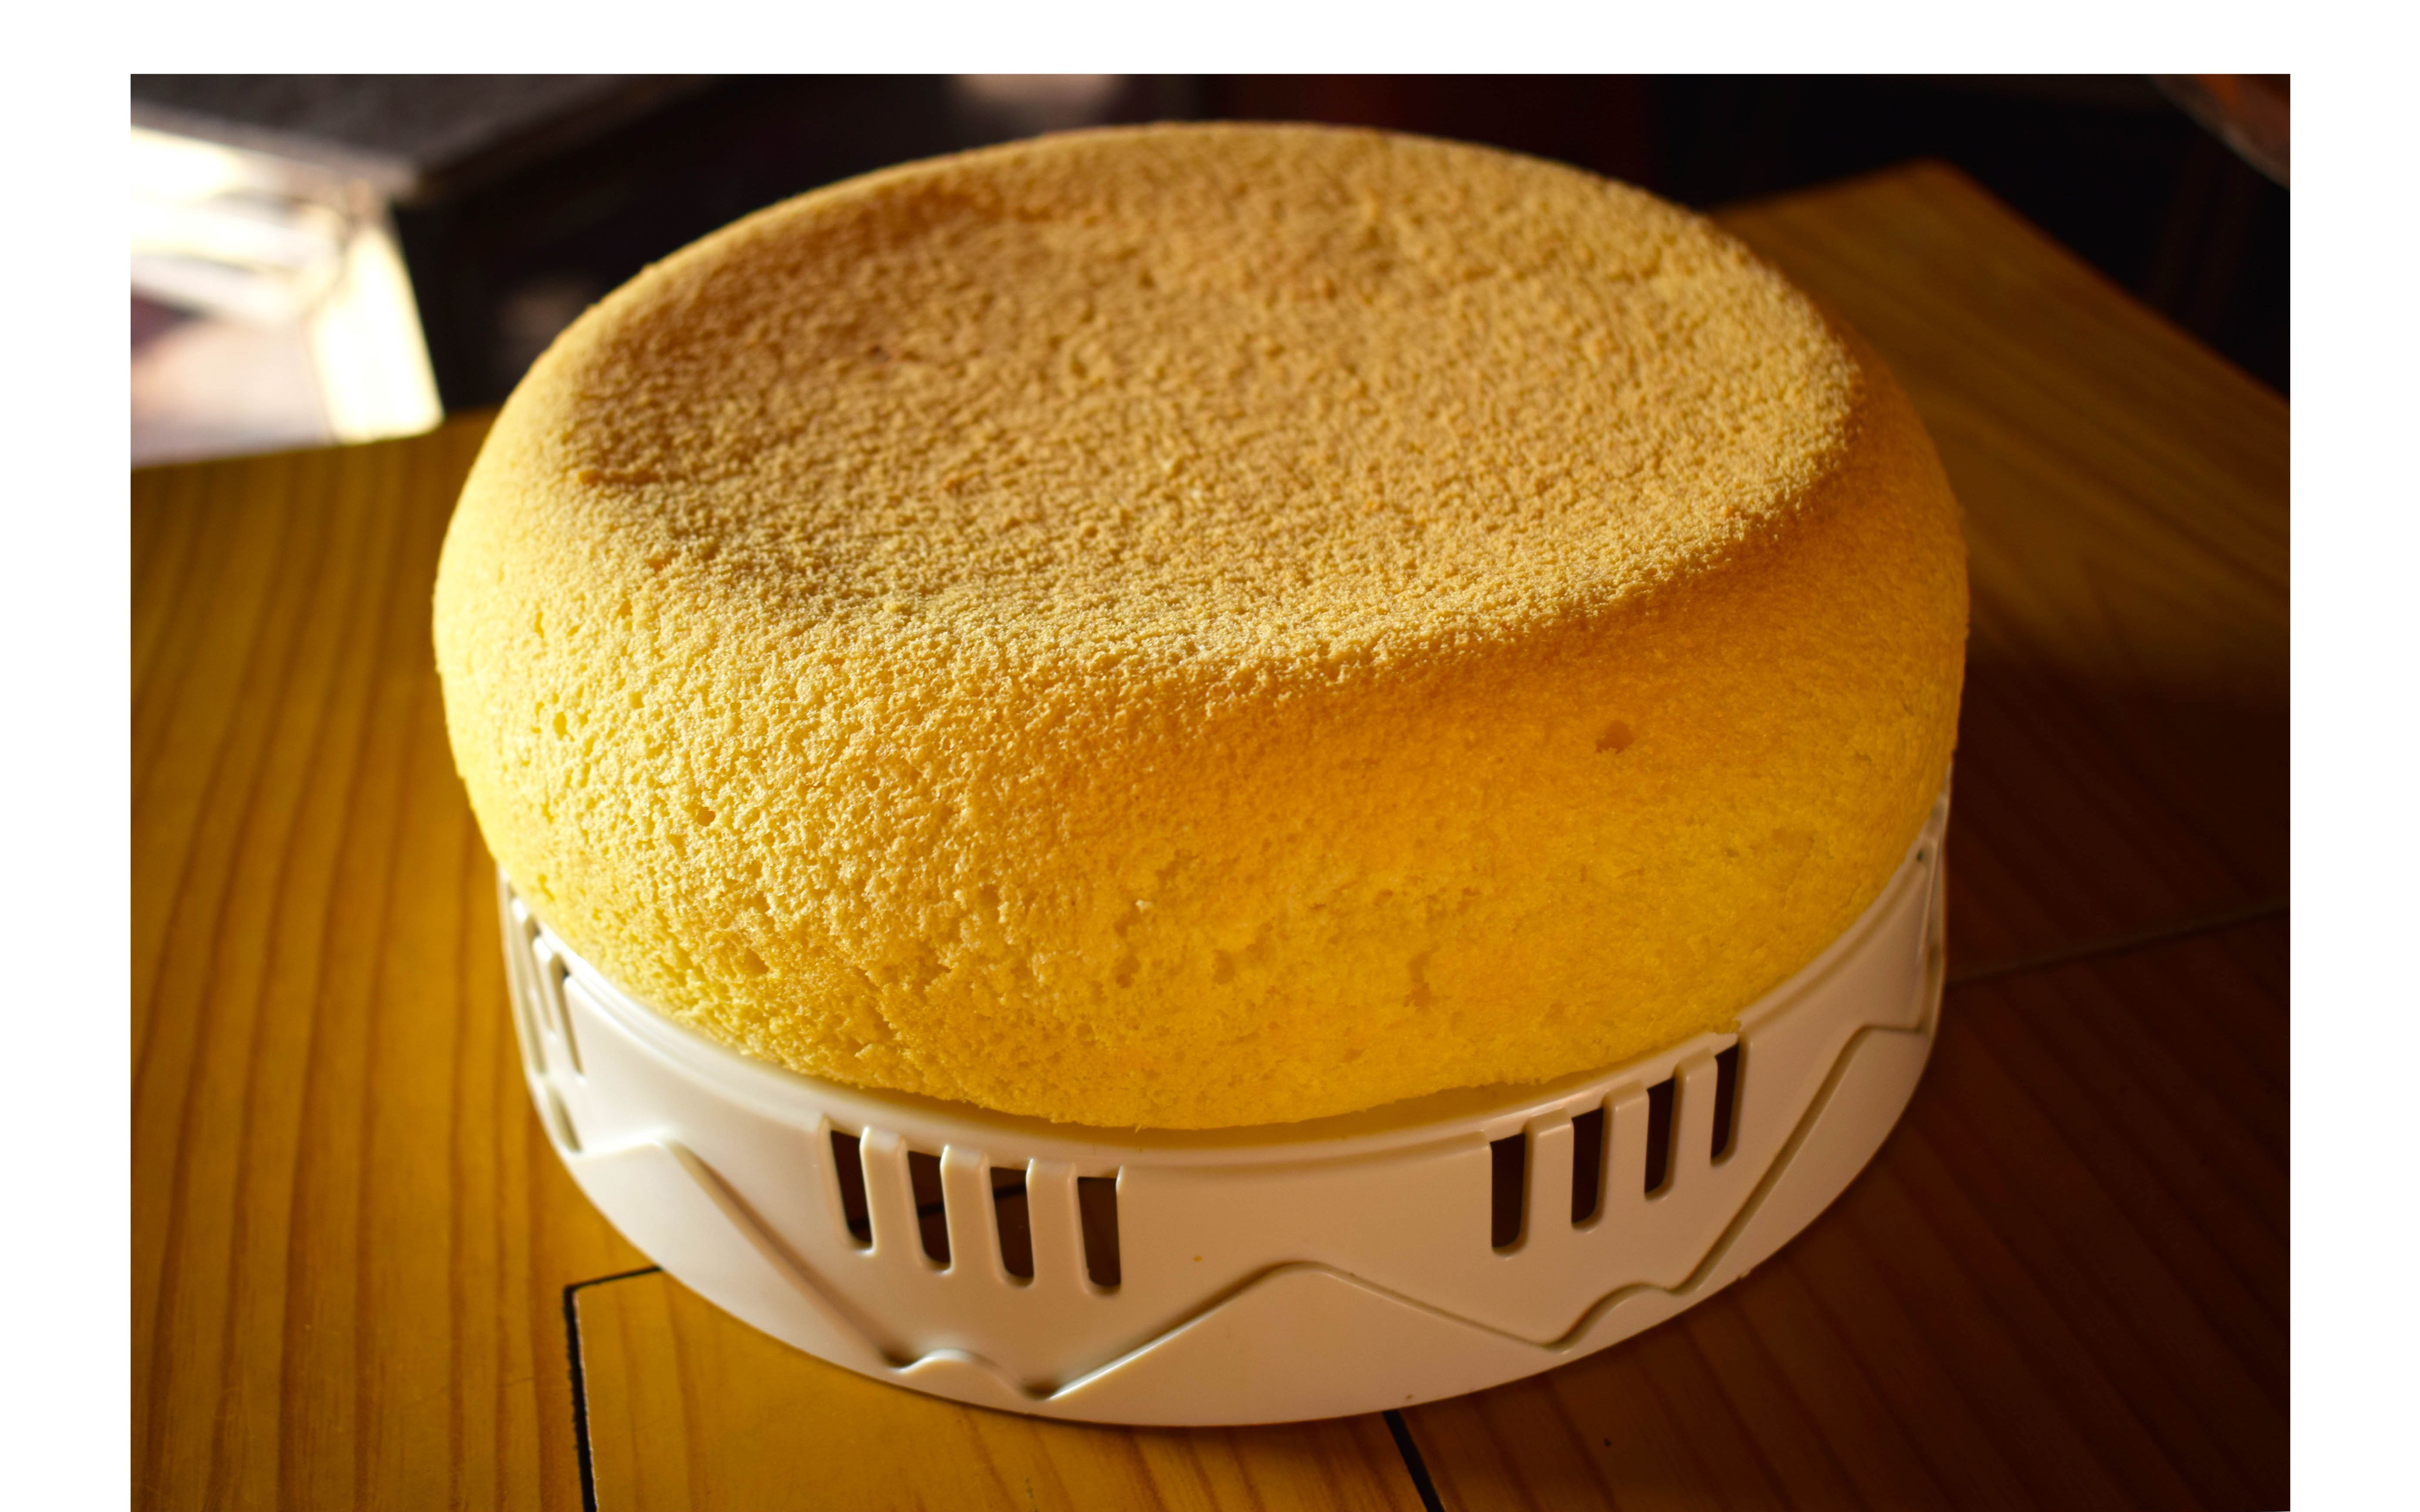 电饭锅蒸蛋糕怎么做_电饭锅蒸蛋糕的做法_豆果美食